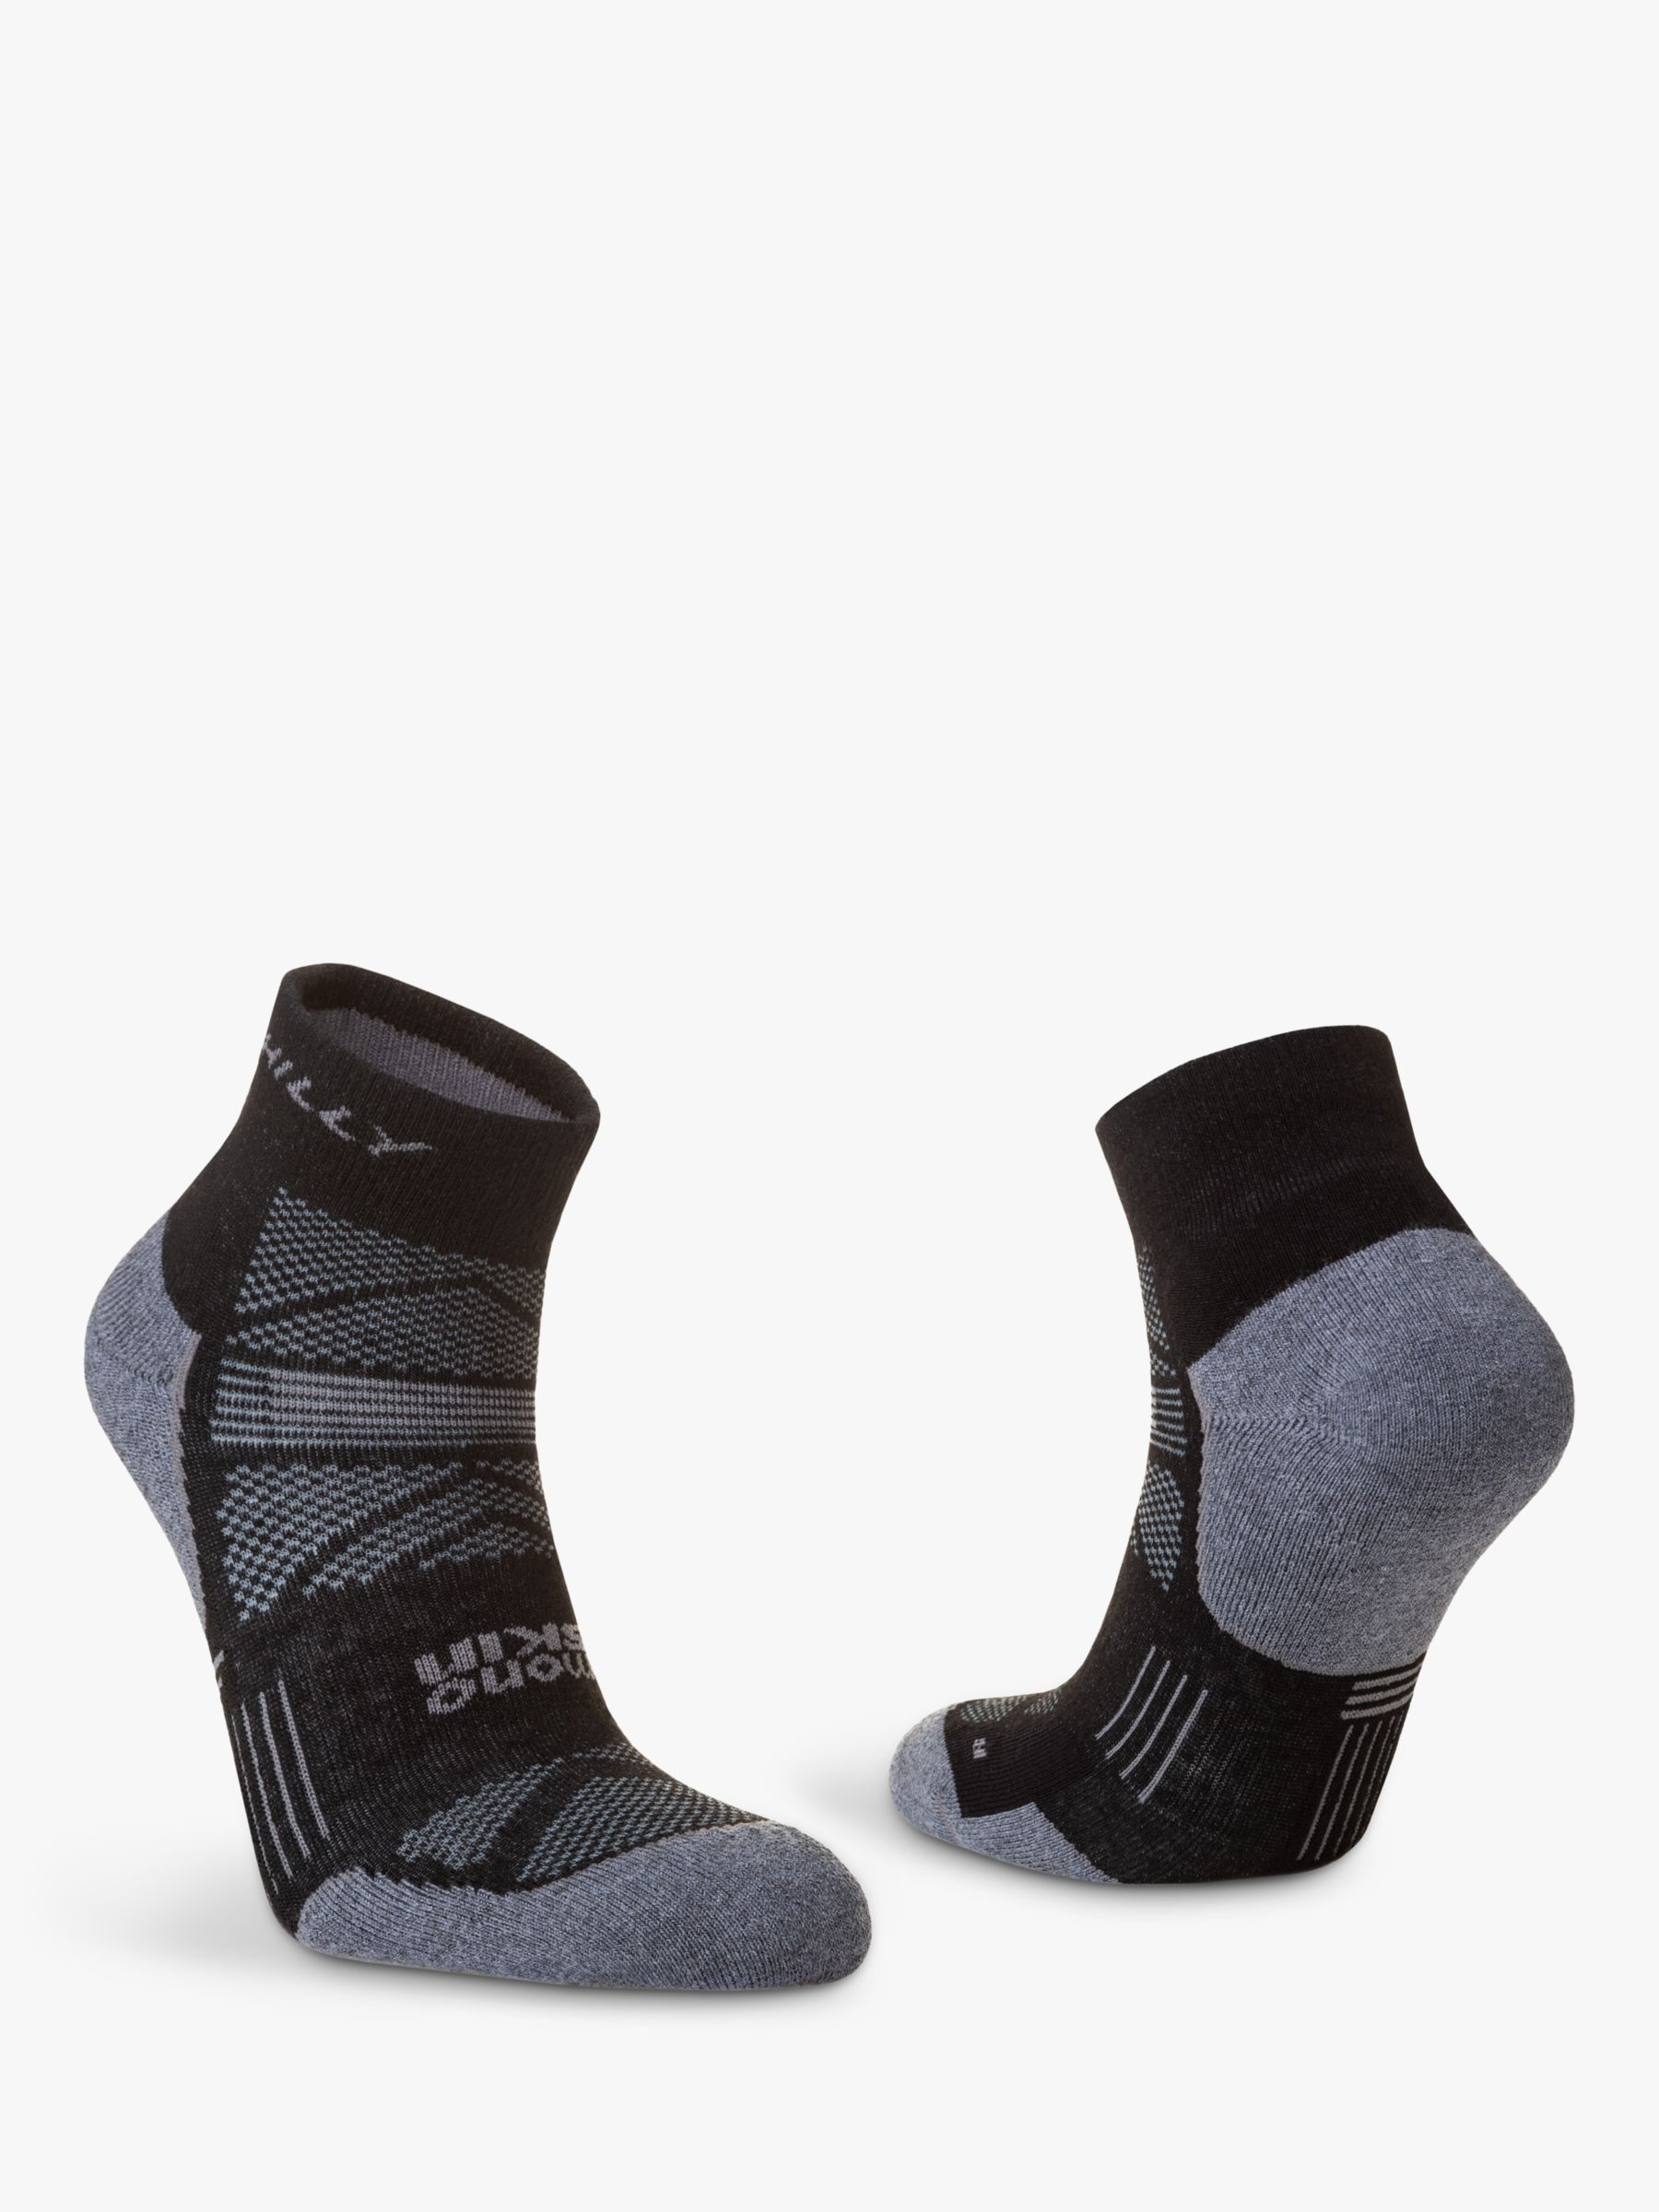 Hilly Supreme Anklet Running Socks, Black/Grey, S